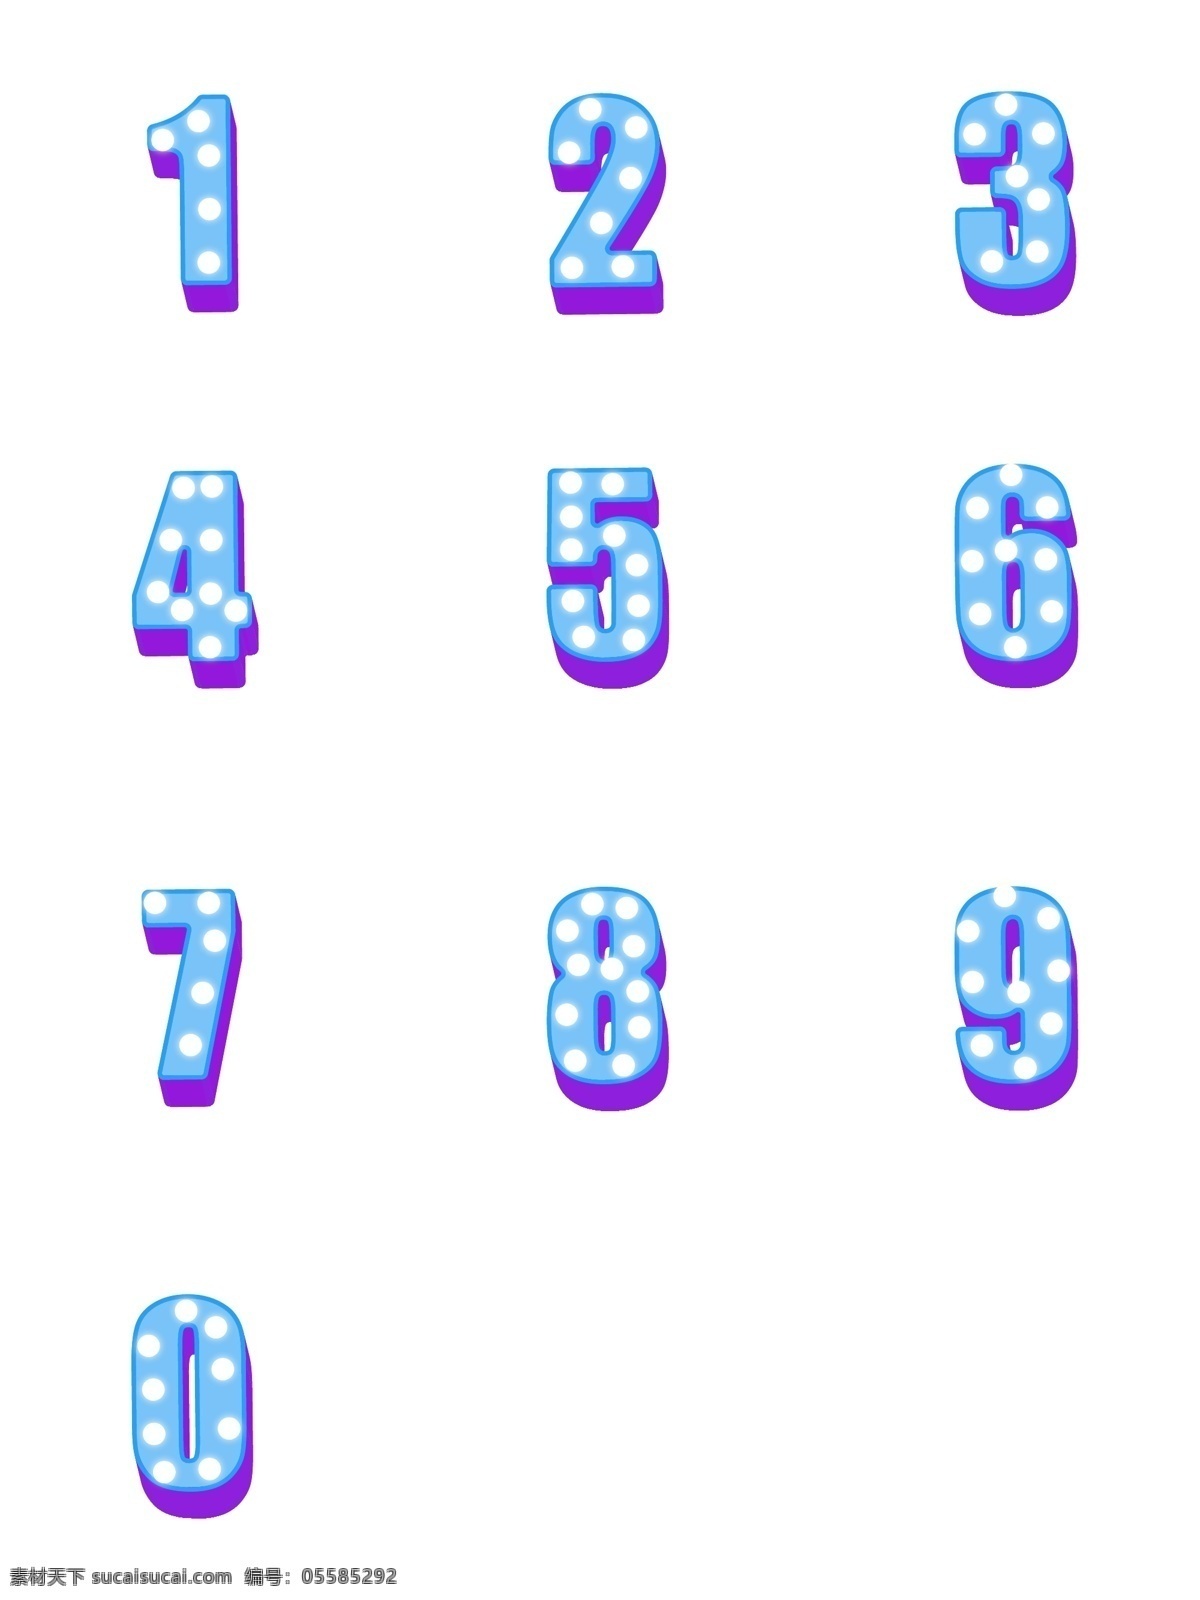 立体数字 3d数字 矢量数字 卡通数字 手绘数字 数字插画 创意数字 艺术数字 简洁数字 高档数字 高端数字 品质感数字 倒计时数字 线条数字 数字字母